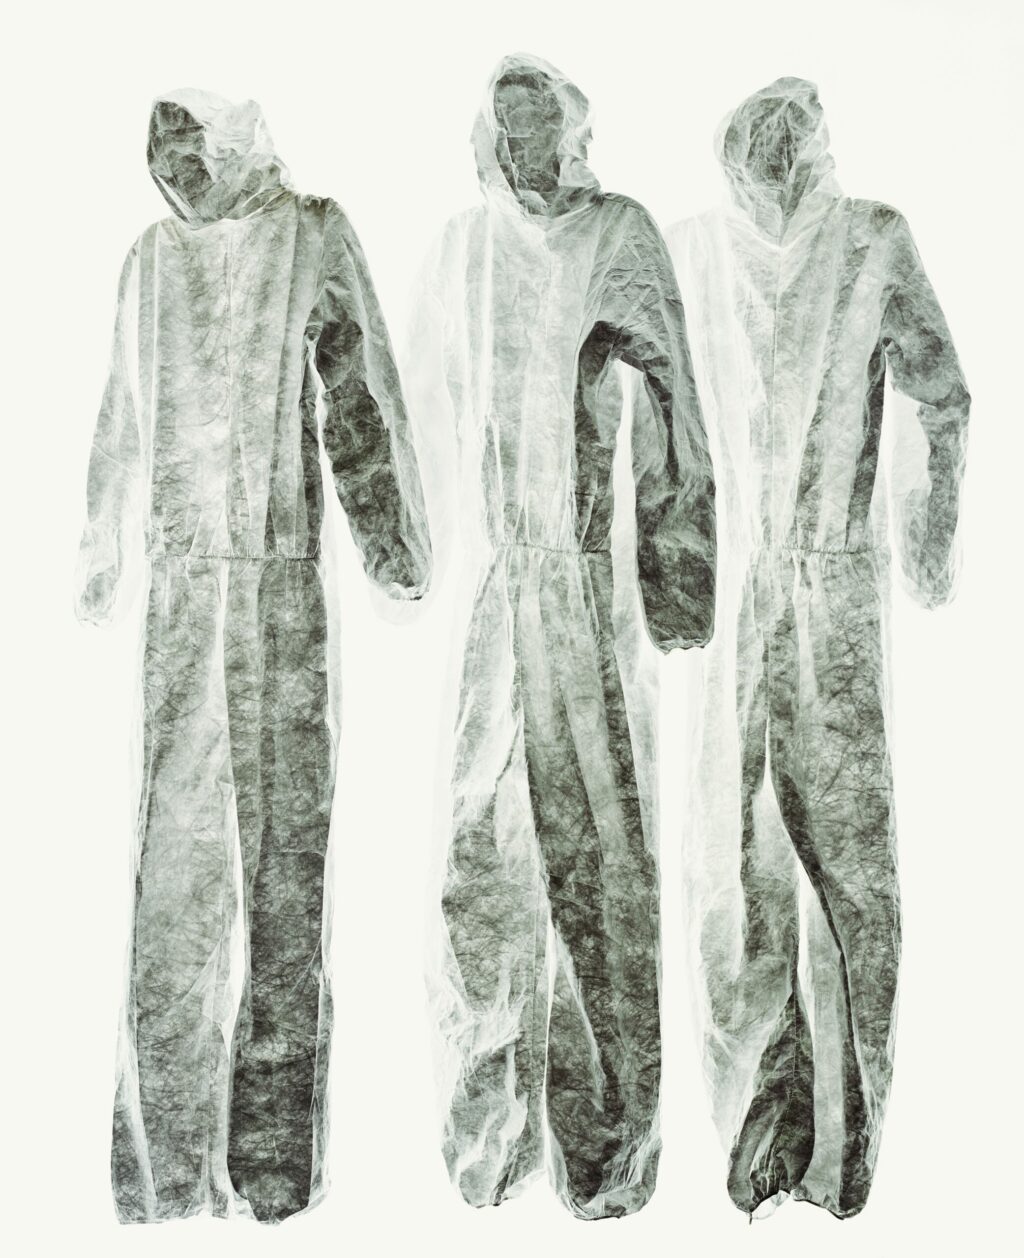 Sonja Braas, « Suits », 2015, © VG Bild und Kunst, une image de la série « An Abundance of Caution », 2014-2017 | sonjabraas.com